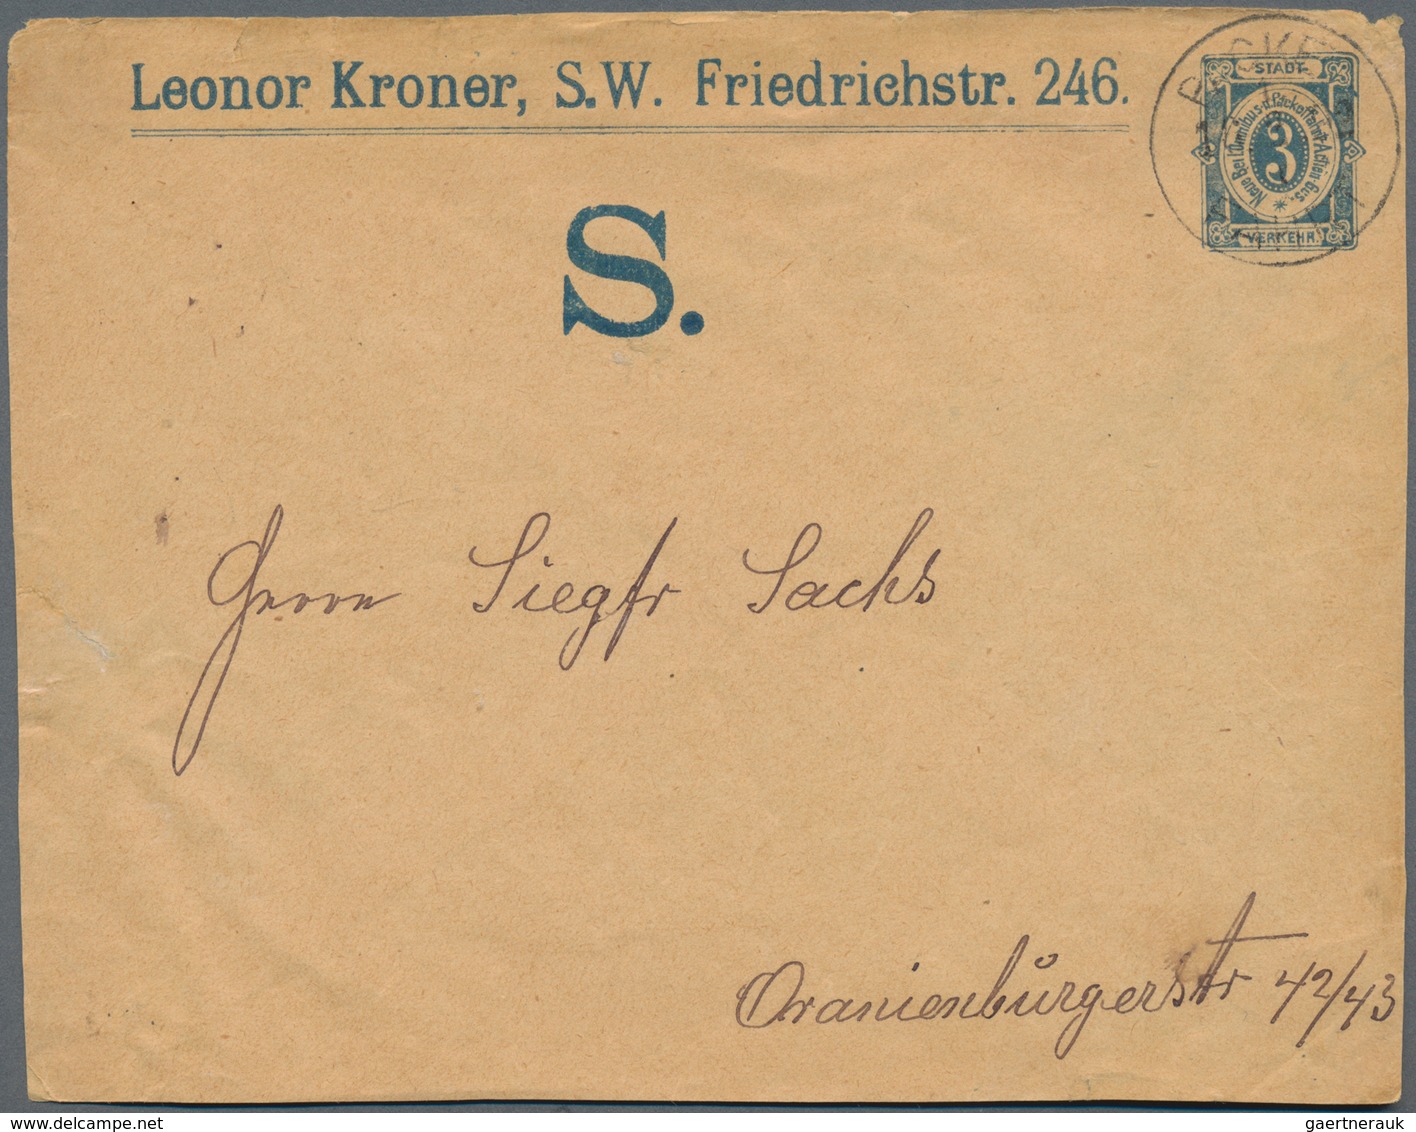 Deutsches Reich - Privatpost (Stadtpost): 1880-1900, Partie mit über 400 Ganzsachen, Briefen und Bel